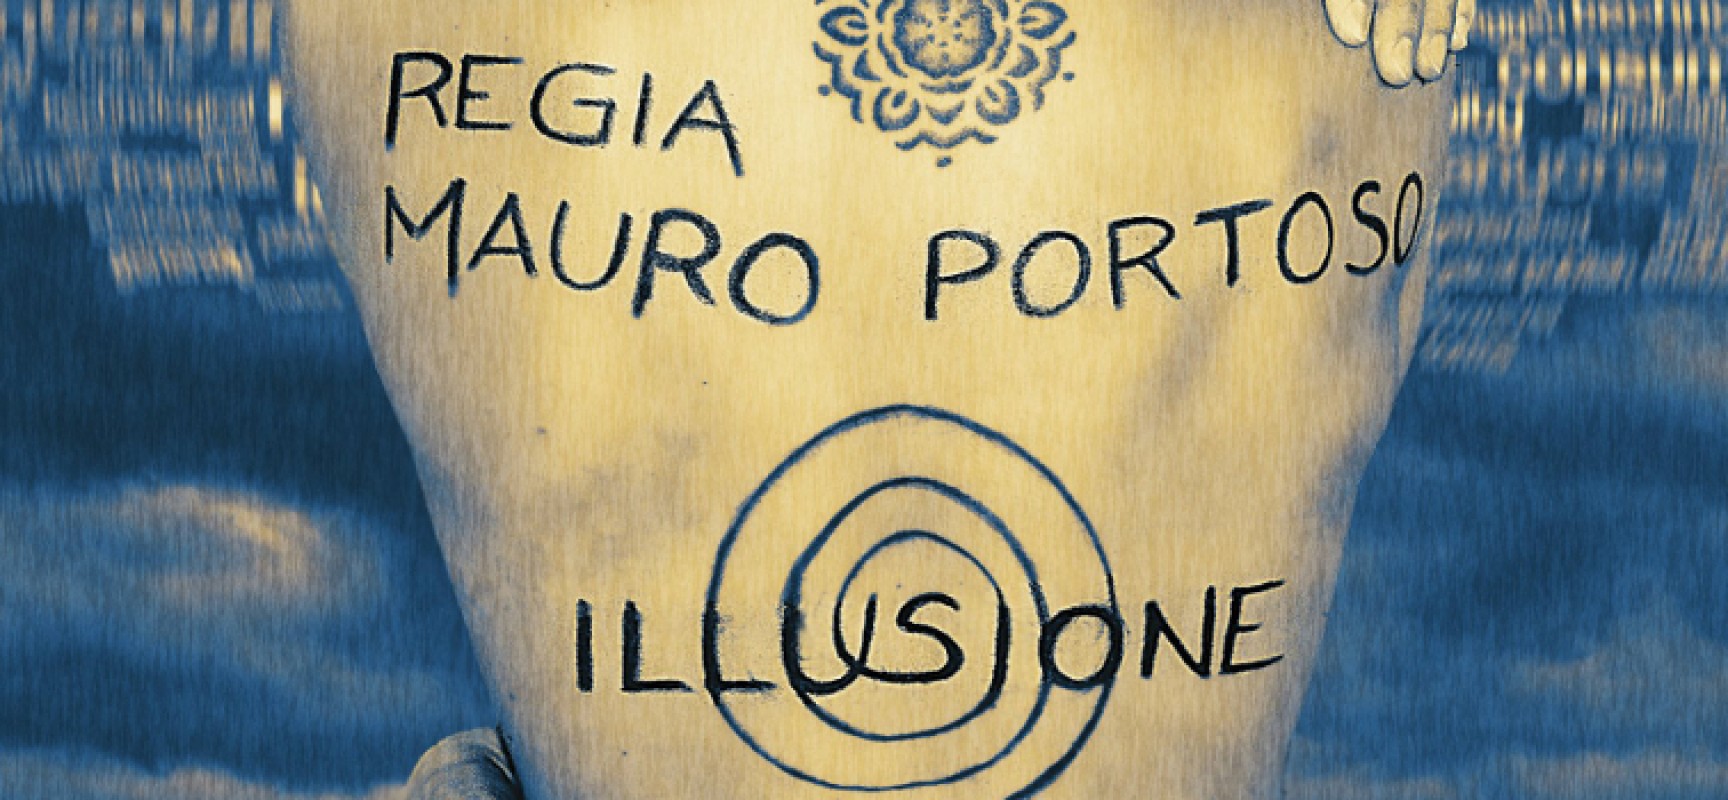 Il regista Mauro Portoso presenta il suo nuovo cortometraggio “Illusione”